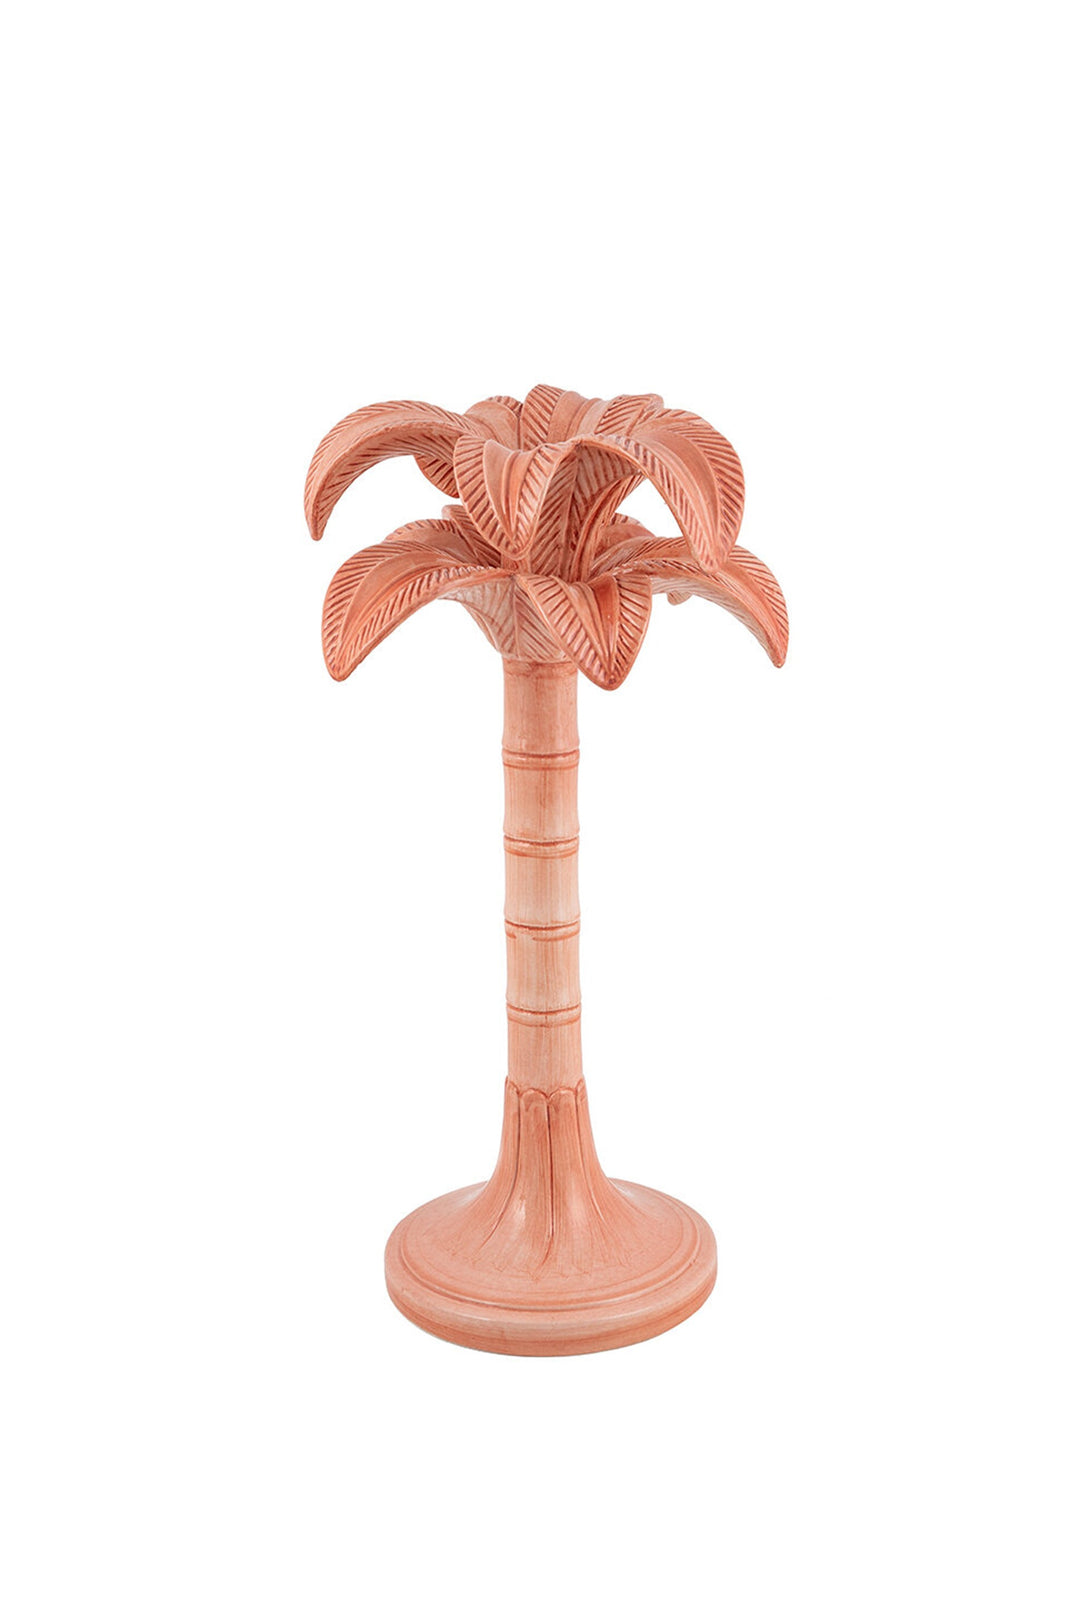 Les Ottomans Palm Large - Pink